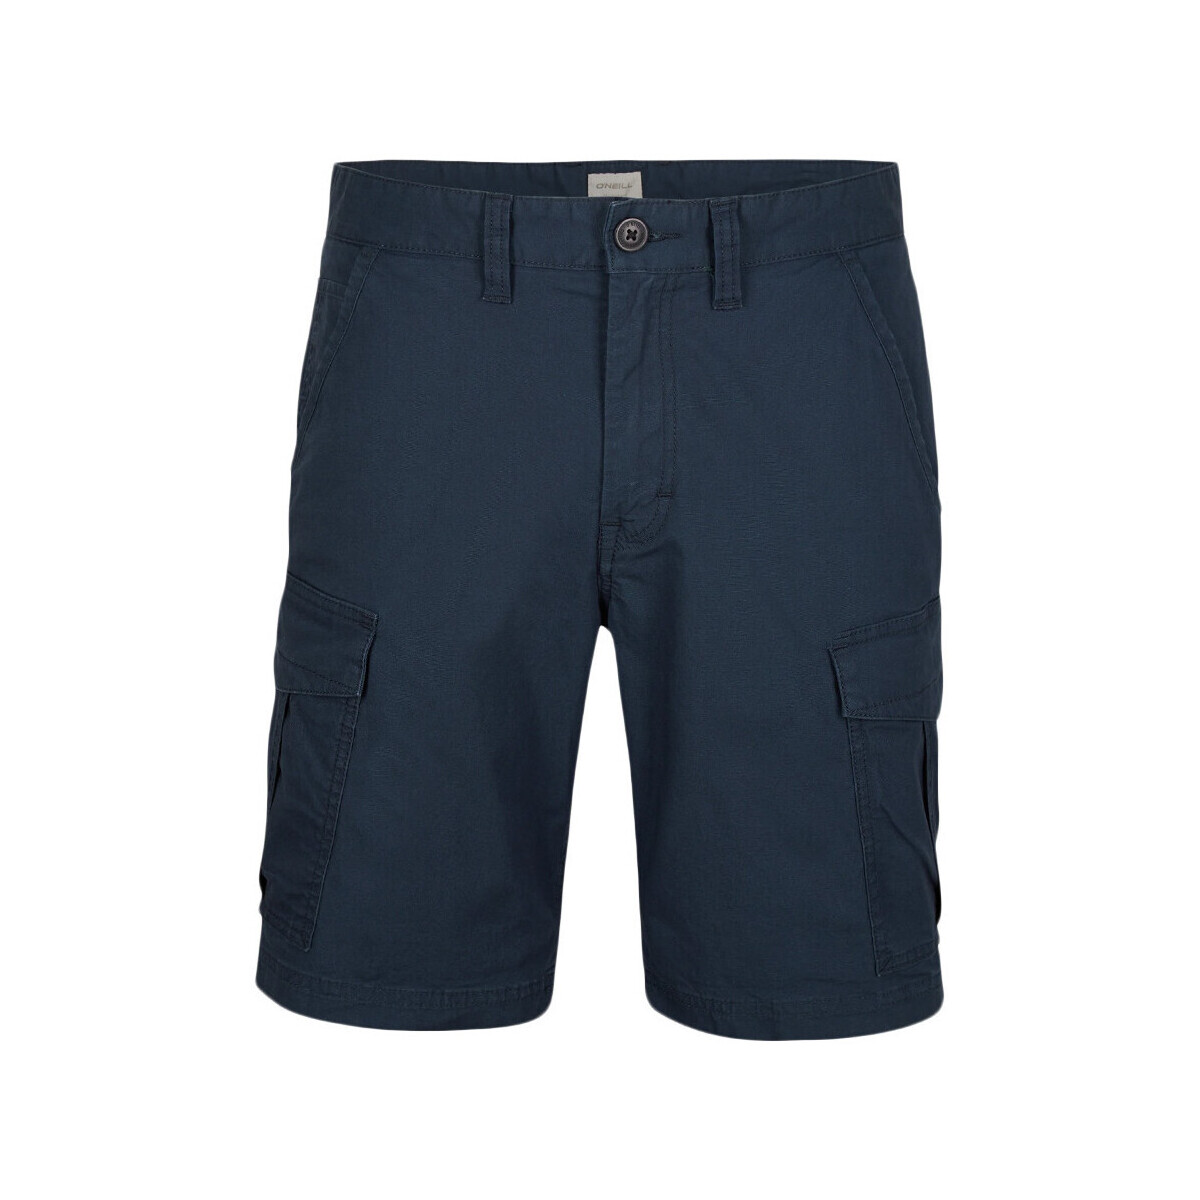 Vêtements Homme Shorts / Bermudas O'neill Short Bleu